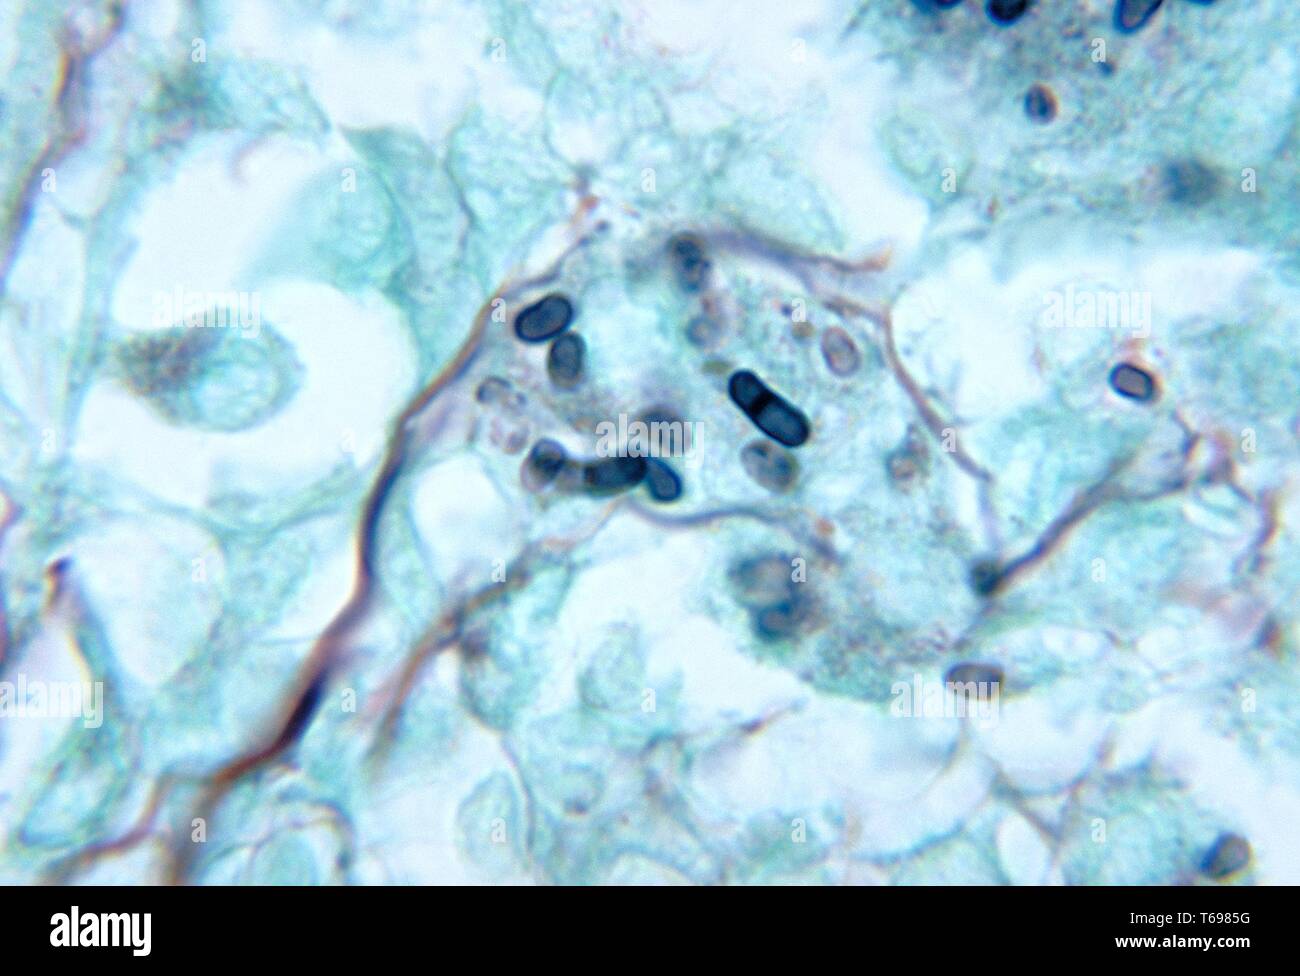 Methenamin silber Fleck photomicrograph des histopathologic Änderungen in einer Maus Hoden, penicilliosis durch Penicillium marneffei, 1972 verursacht. Bild mit freundlicher Genehmigung Zentren für Krankheitskontrolle und Prävention (CDC)/Dr. Libero Ajello. () Stockfoto